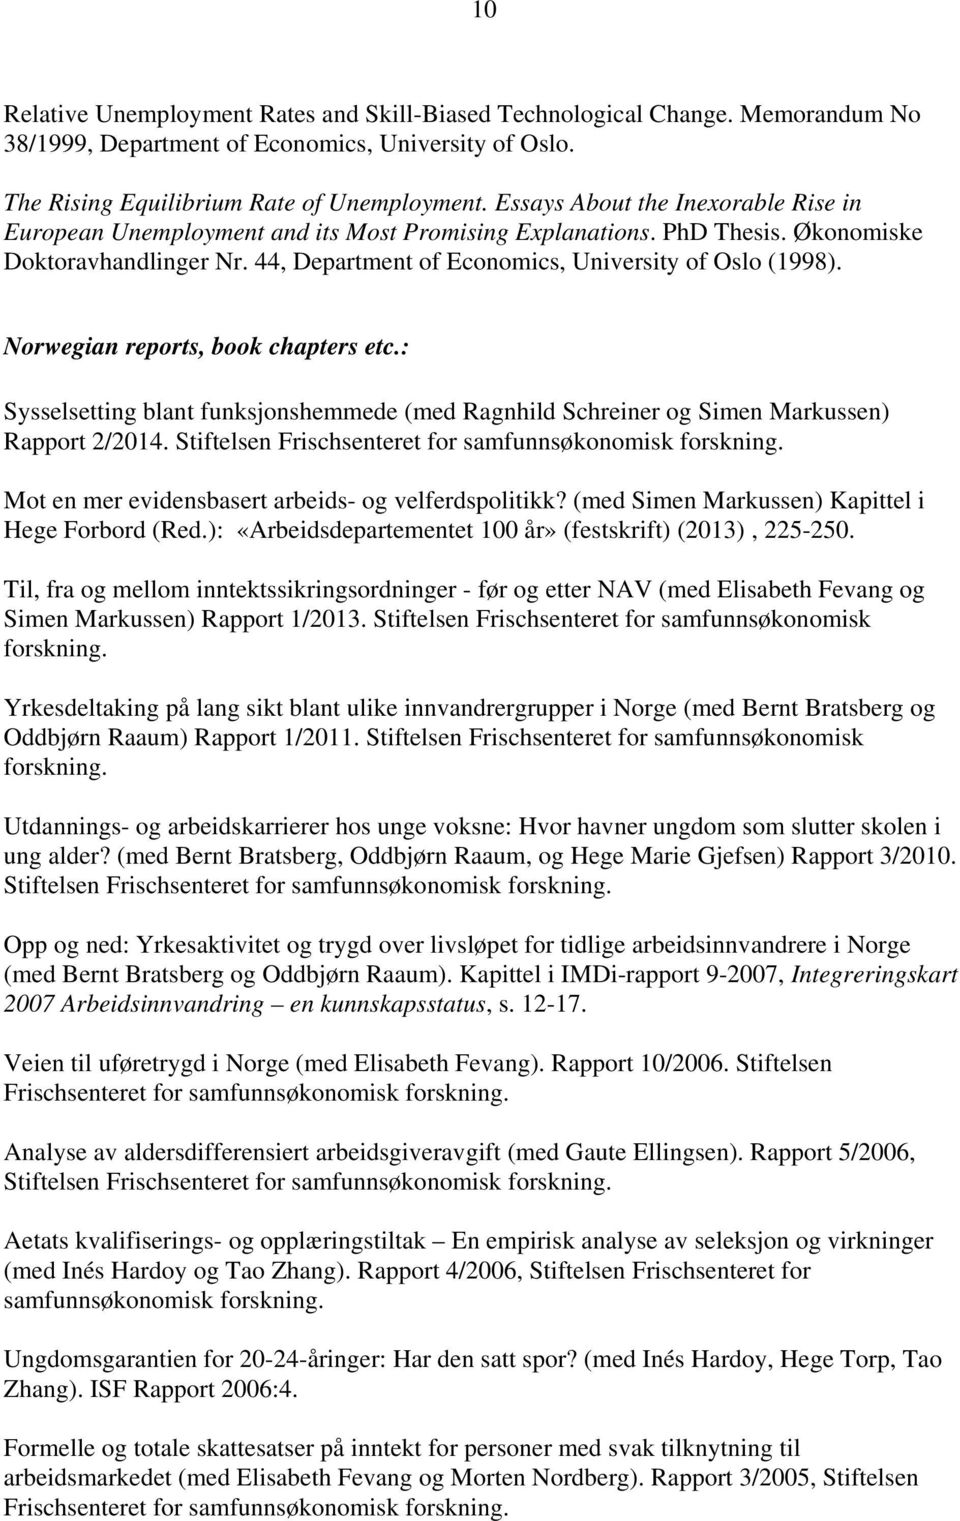 Norwegian reports, book chapters etc.: Sysselsetting blant funksjonshemmede (med Ragnhild Schreiner og Simen Markussen) Rapport 2/2014. Stiftelsen Frischsenteret for samfunnsøkonomisk forskning.